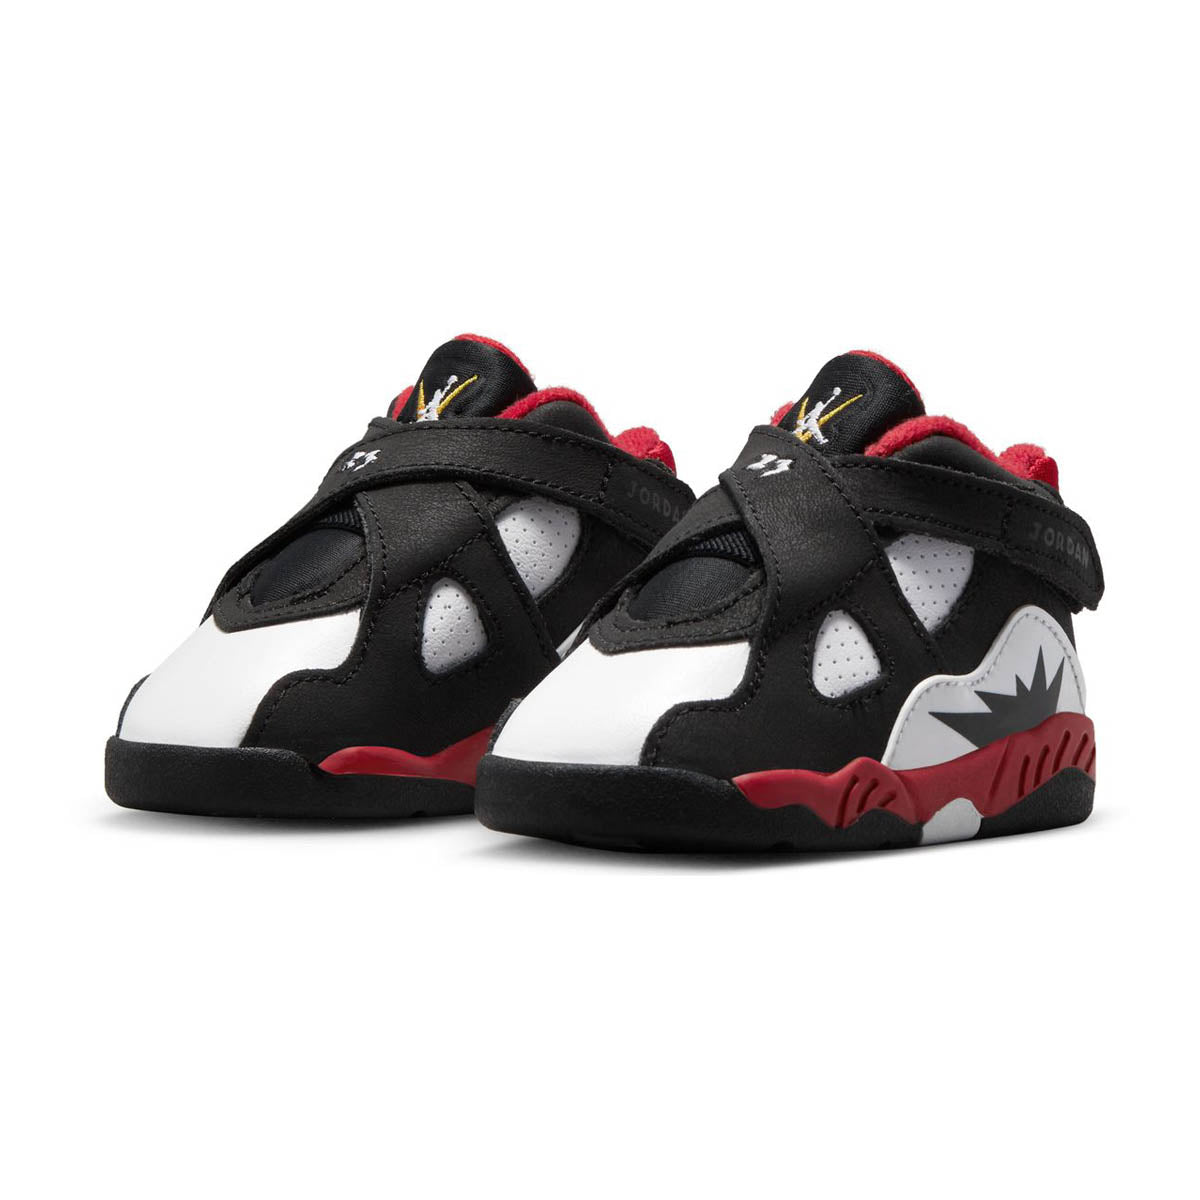 Kids Jordans – Millennium Shoes